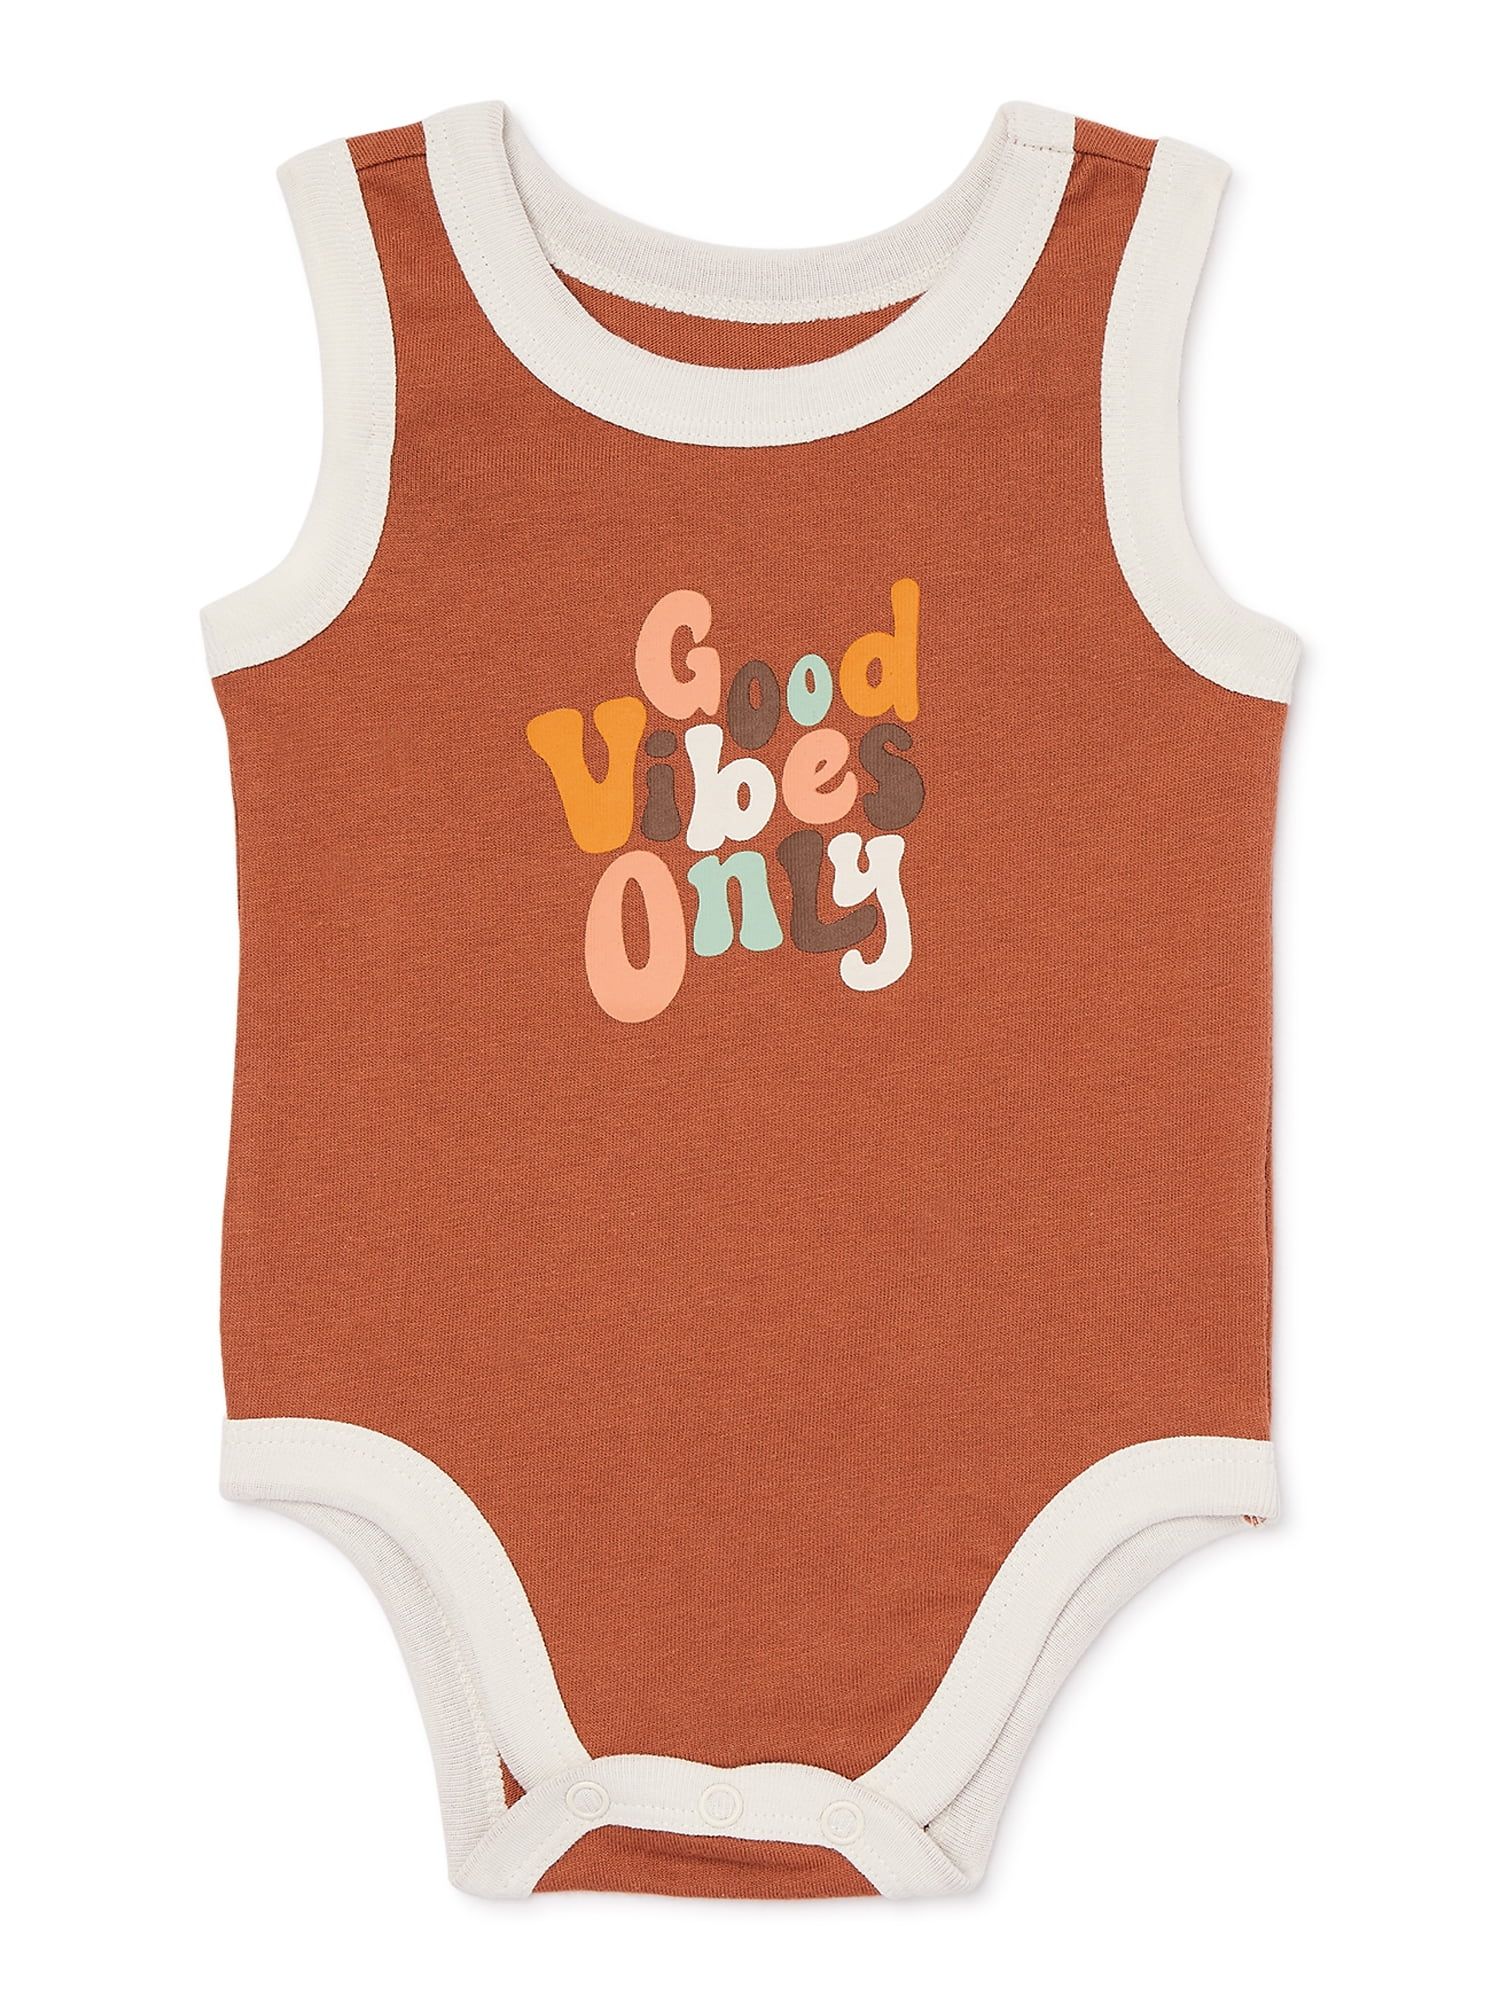 Garanimals Baby Boy Graphic Tank Cotton Bodysuit, Sizes 0-24 Months | Walmart (US)